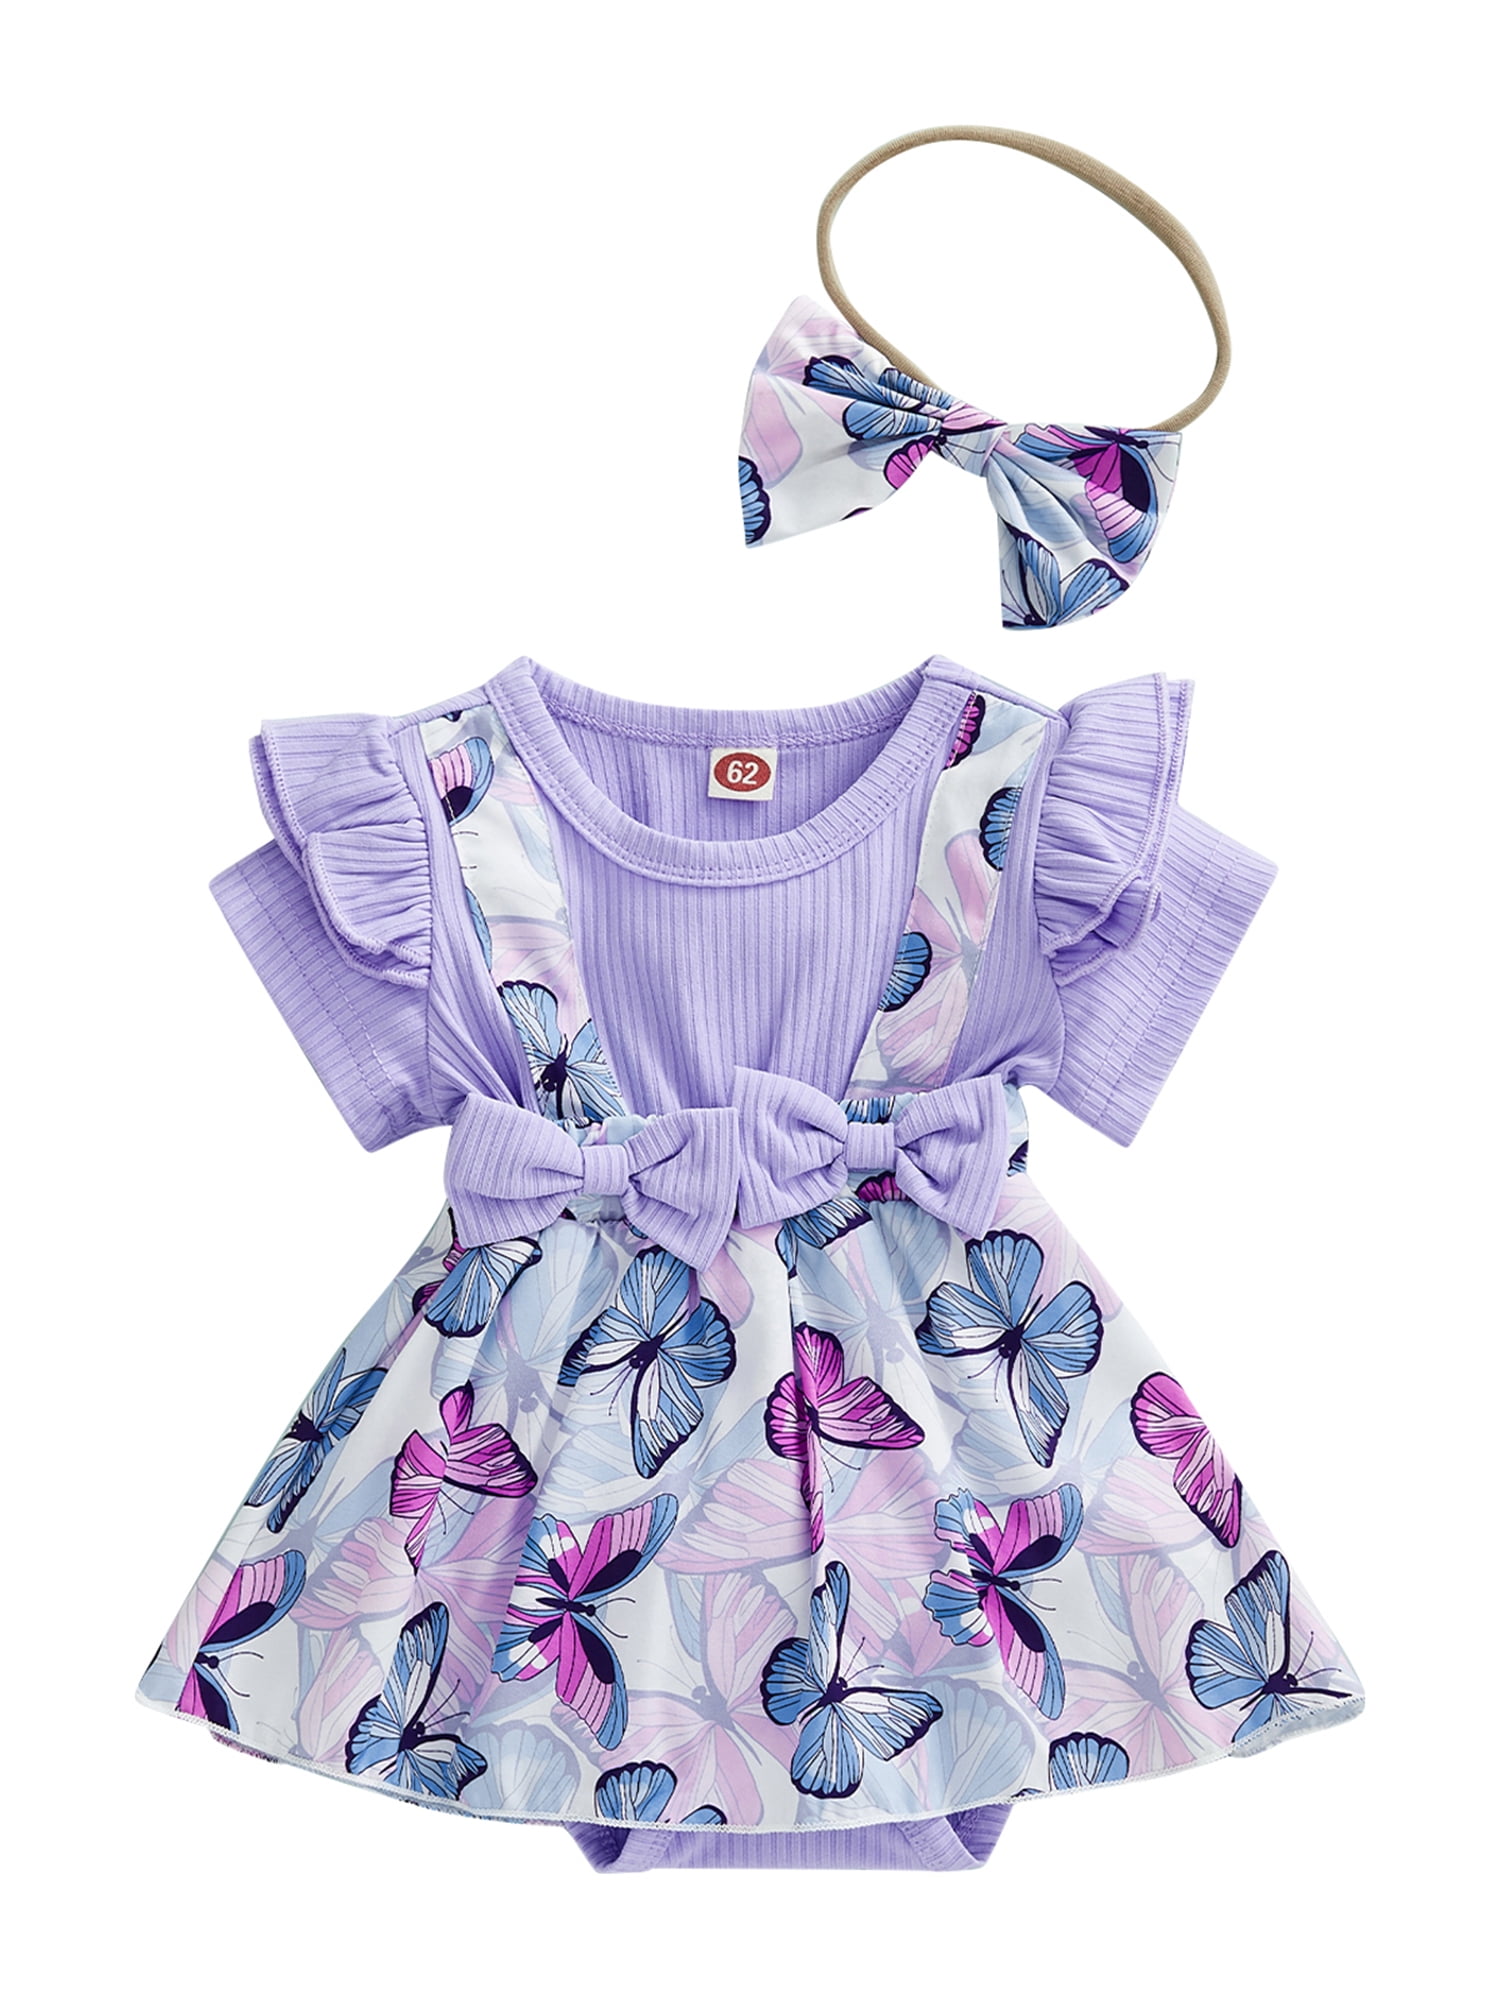 Qtinghua Newborn Baby Girls Summer Outfits Butterfly Ruffle Dress ...